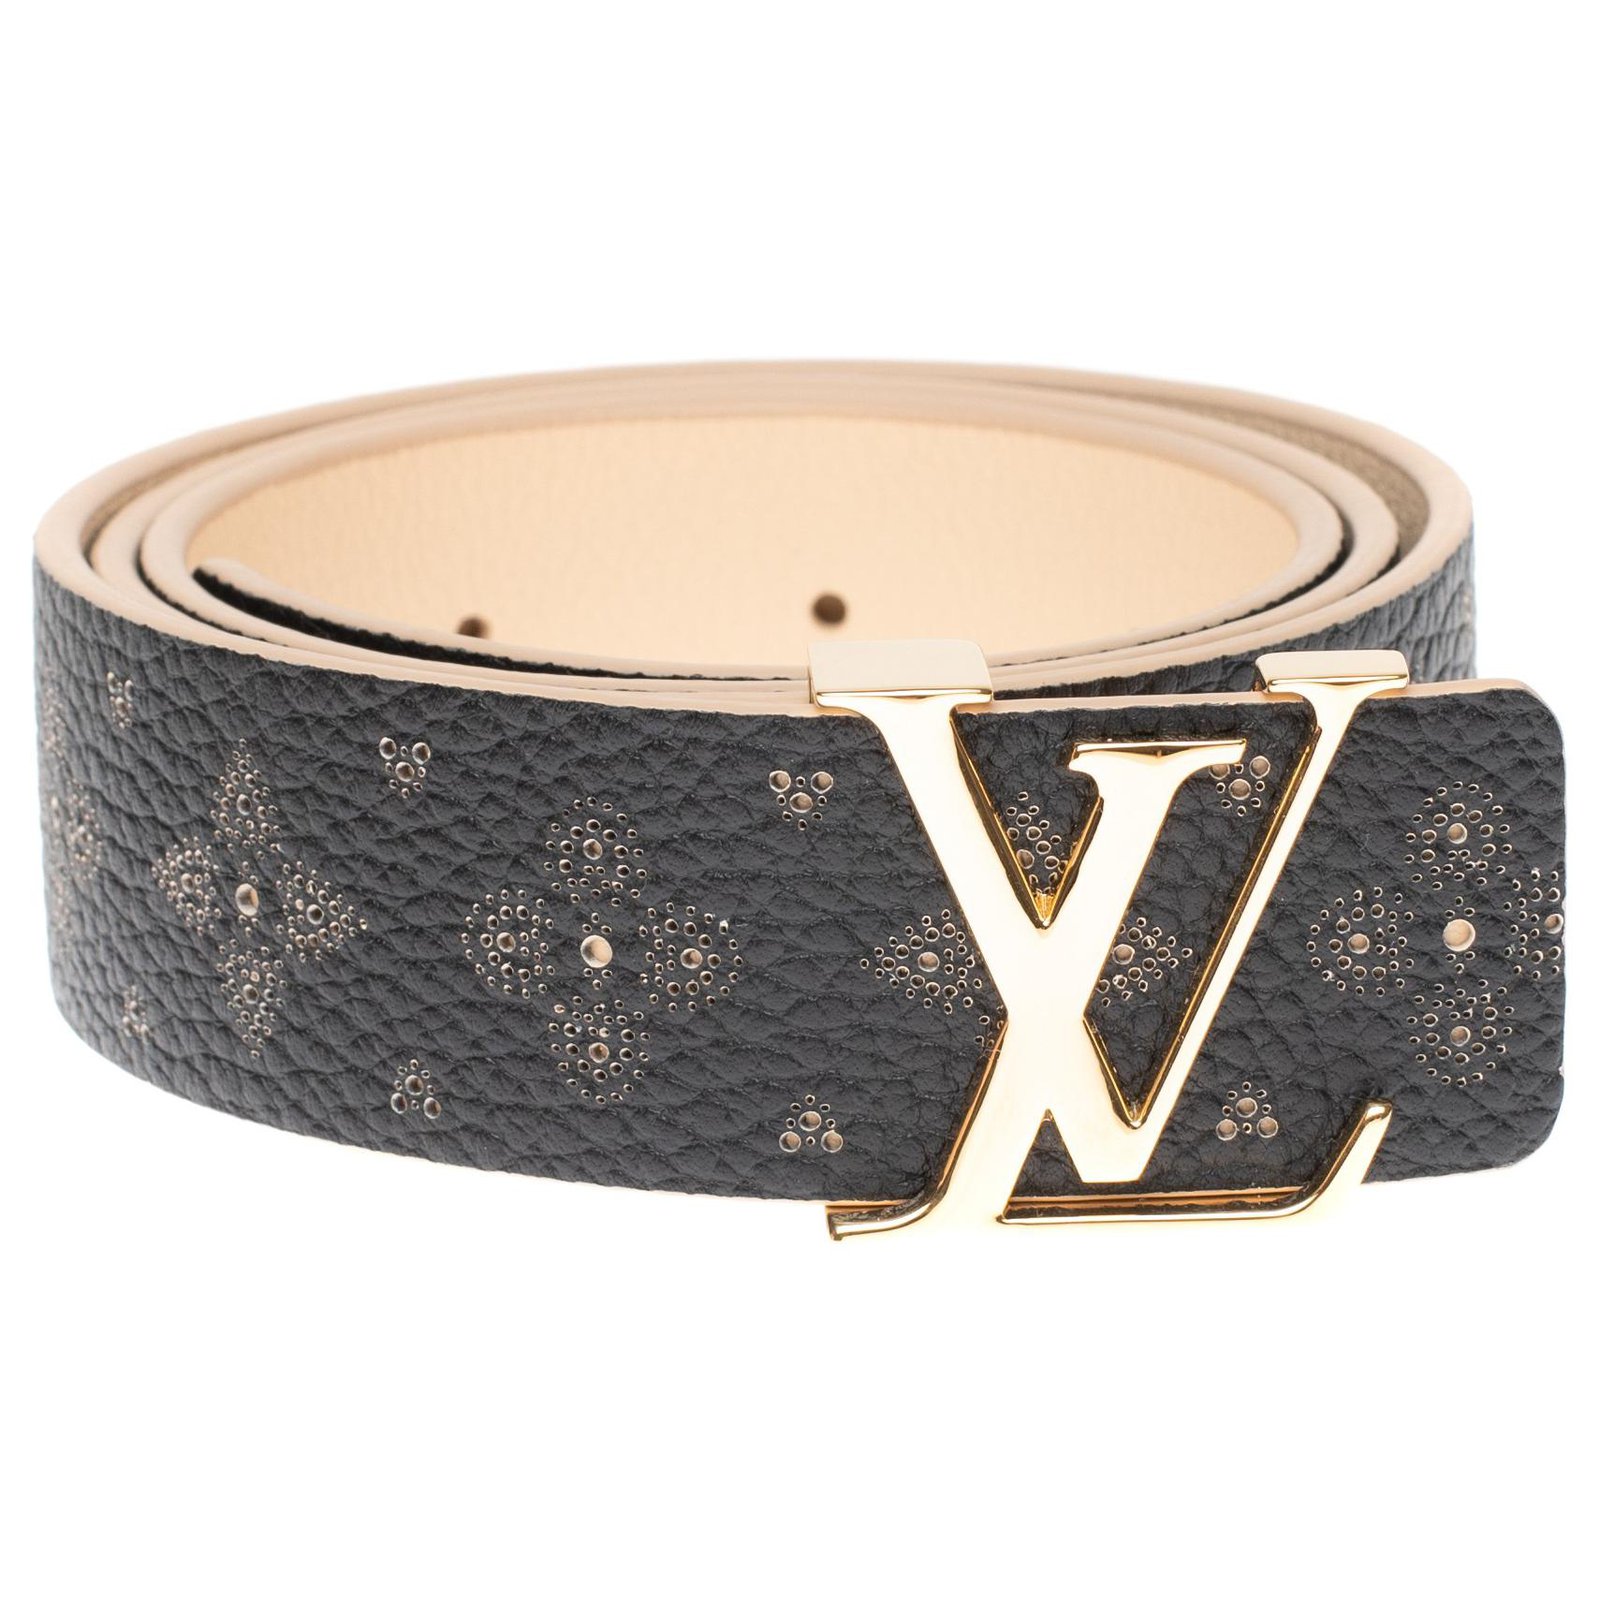 Cintura da donna Louis Vuitton in Taurillon nero goffrato nuove